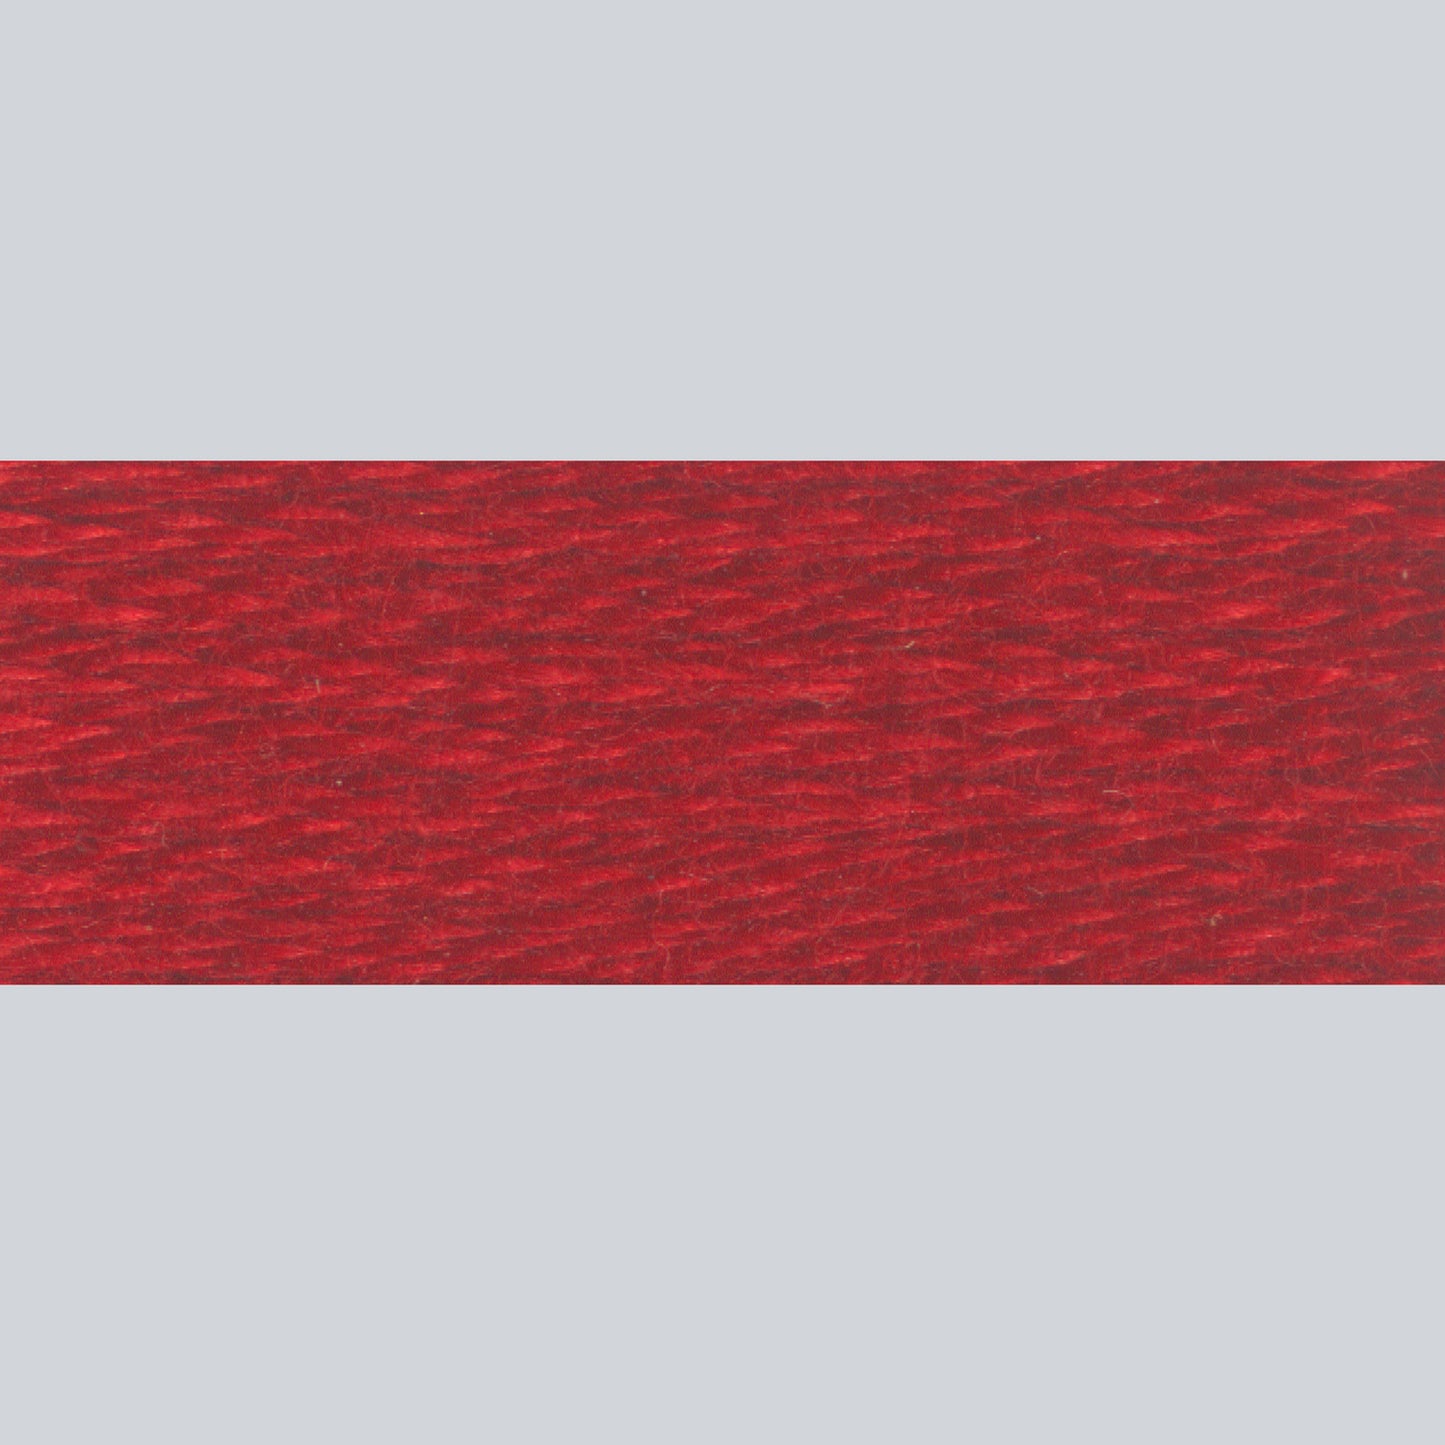 DMC Embroidery Floss - 498 Dark Red Alternative View #1